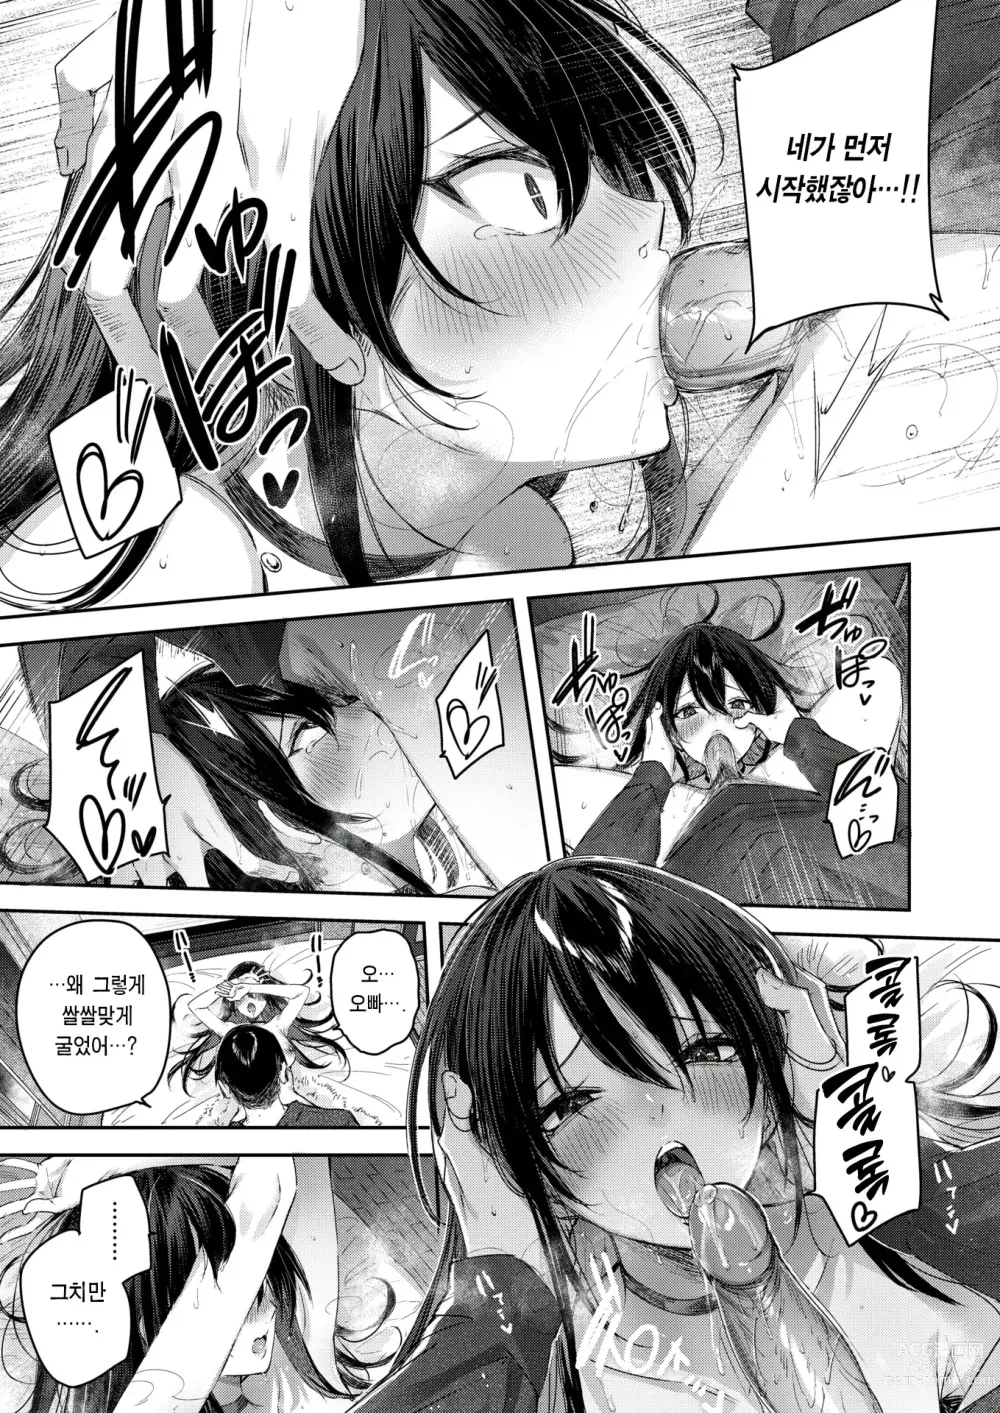 Page 19 of manga Imouto Pudding